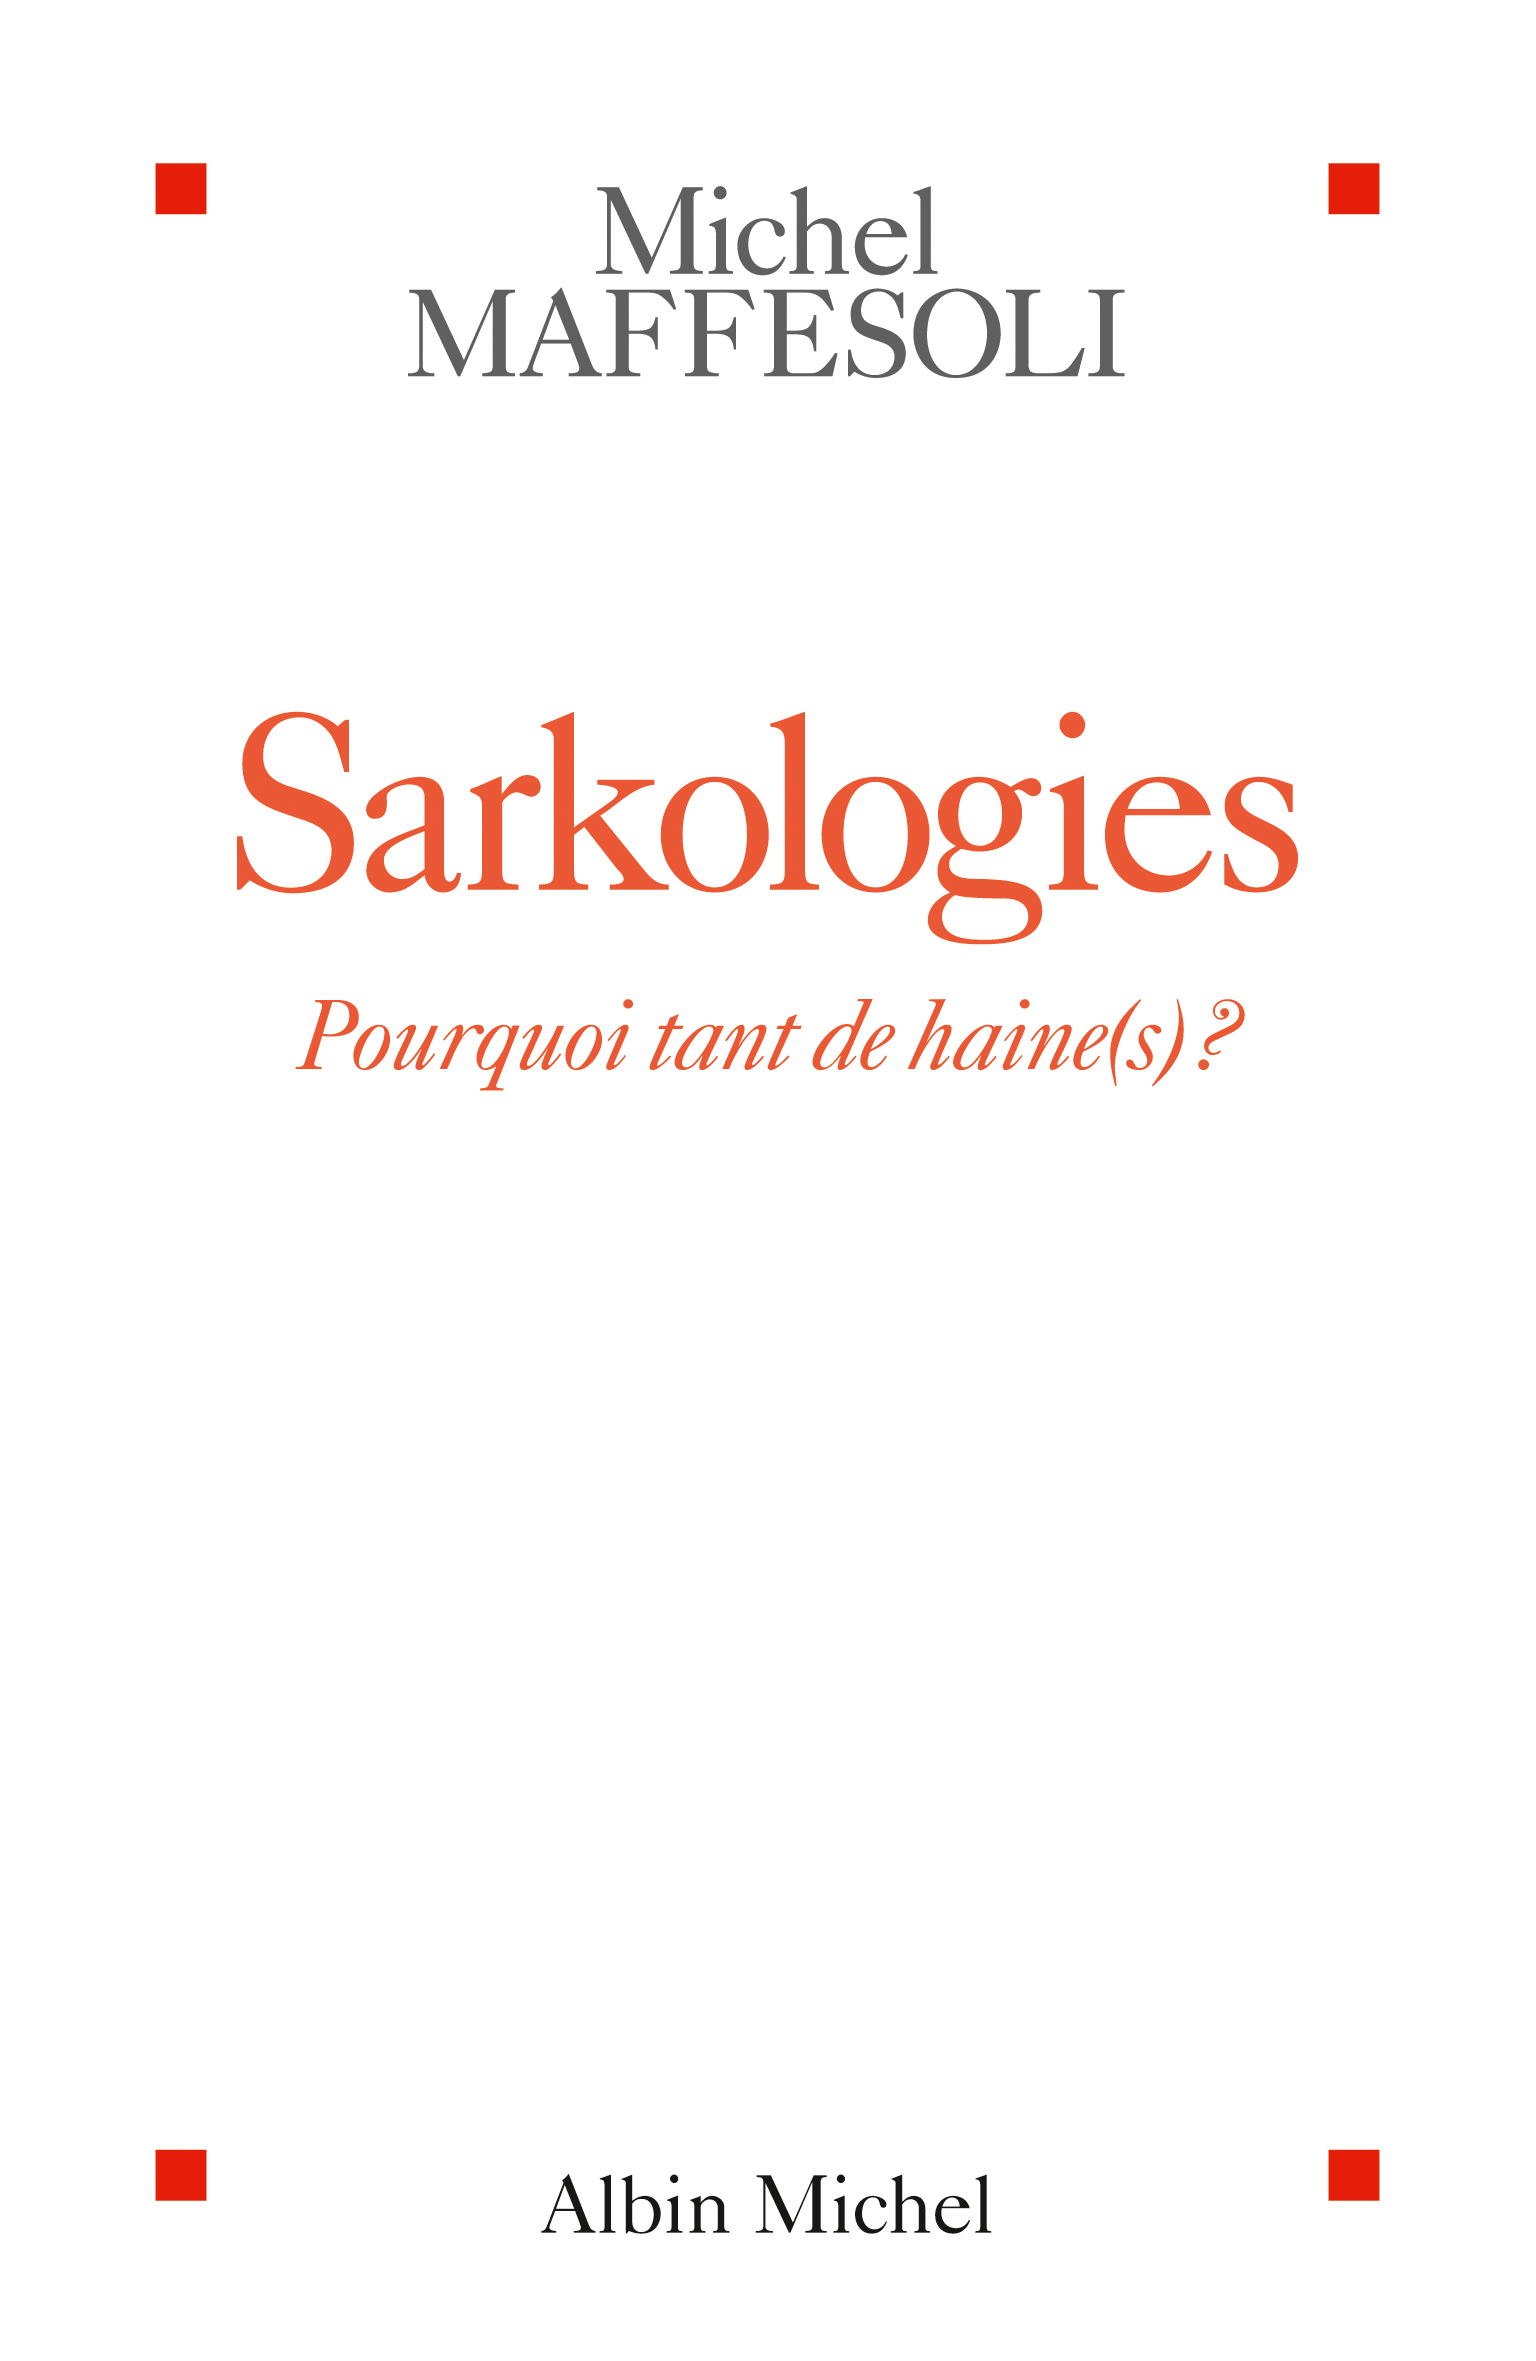 Couverture du livre Sarkologies